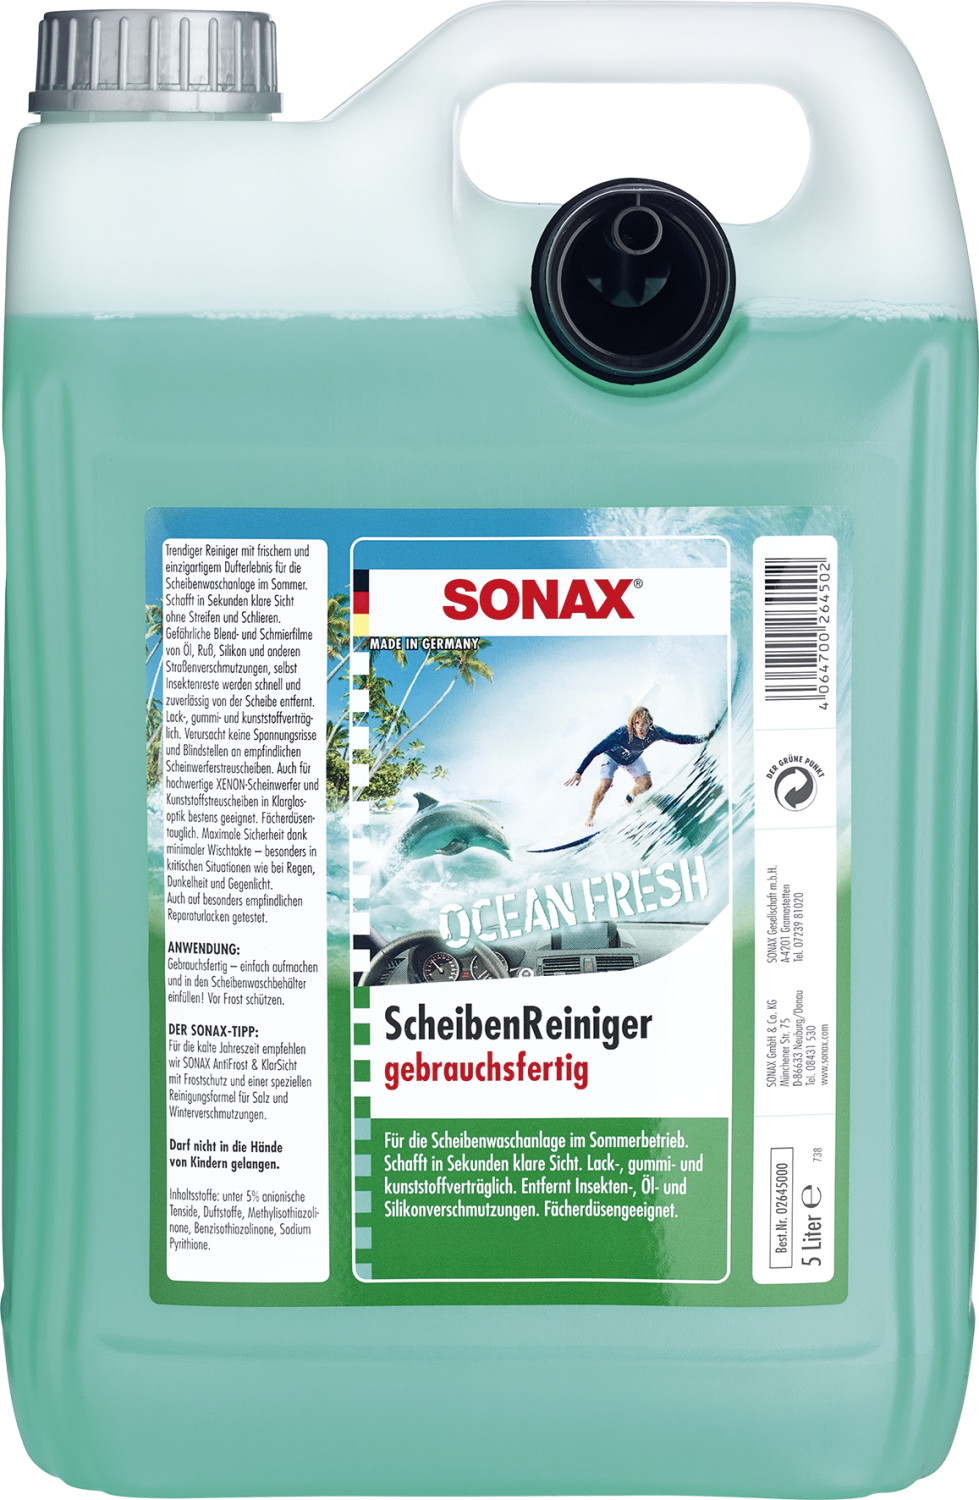 Sonax 02645000 ScheibenReiniger gebrauchsfertig Ocean-Fresh 5